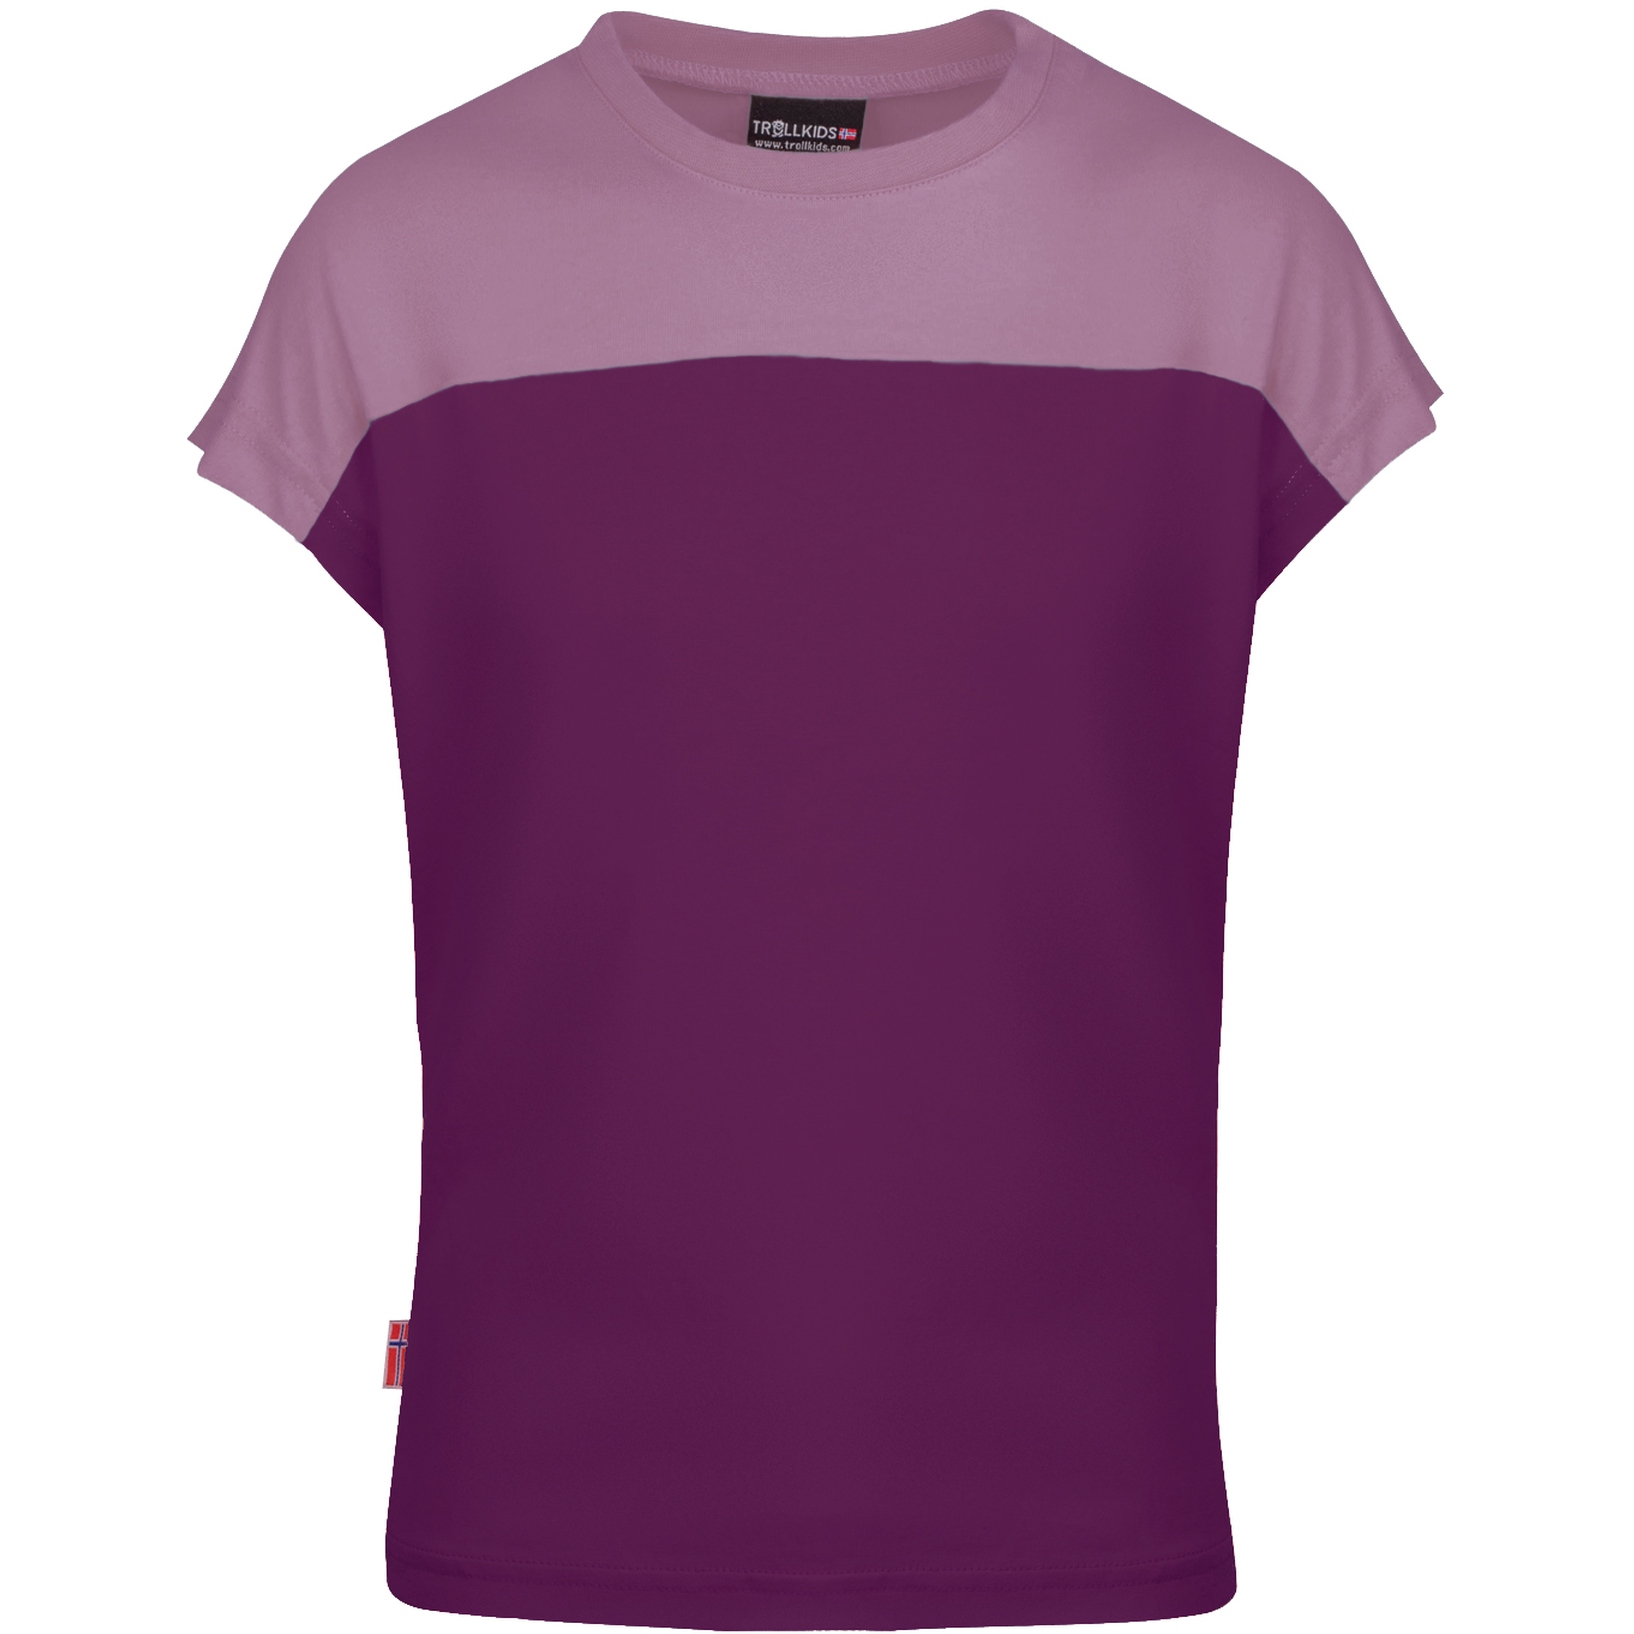 Produktbild von Trollkids Bergen Mädchen T-Shirt - mulberry/orchid